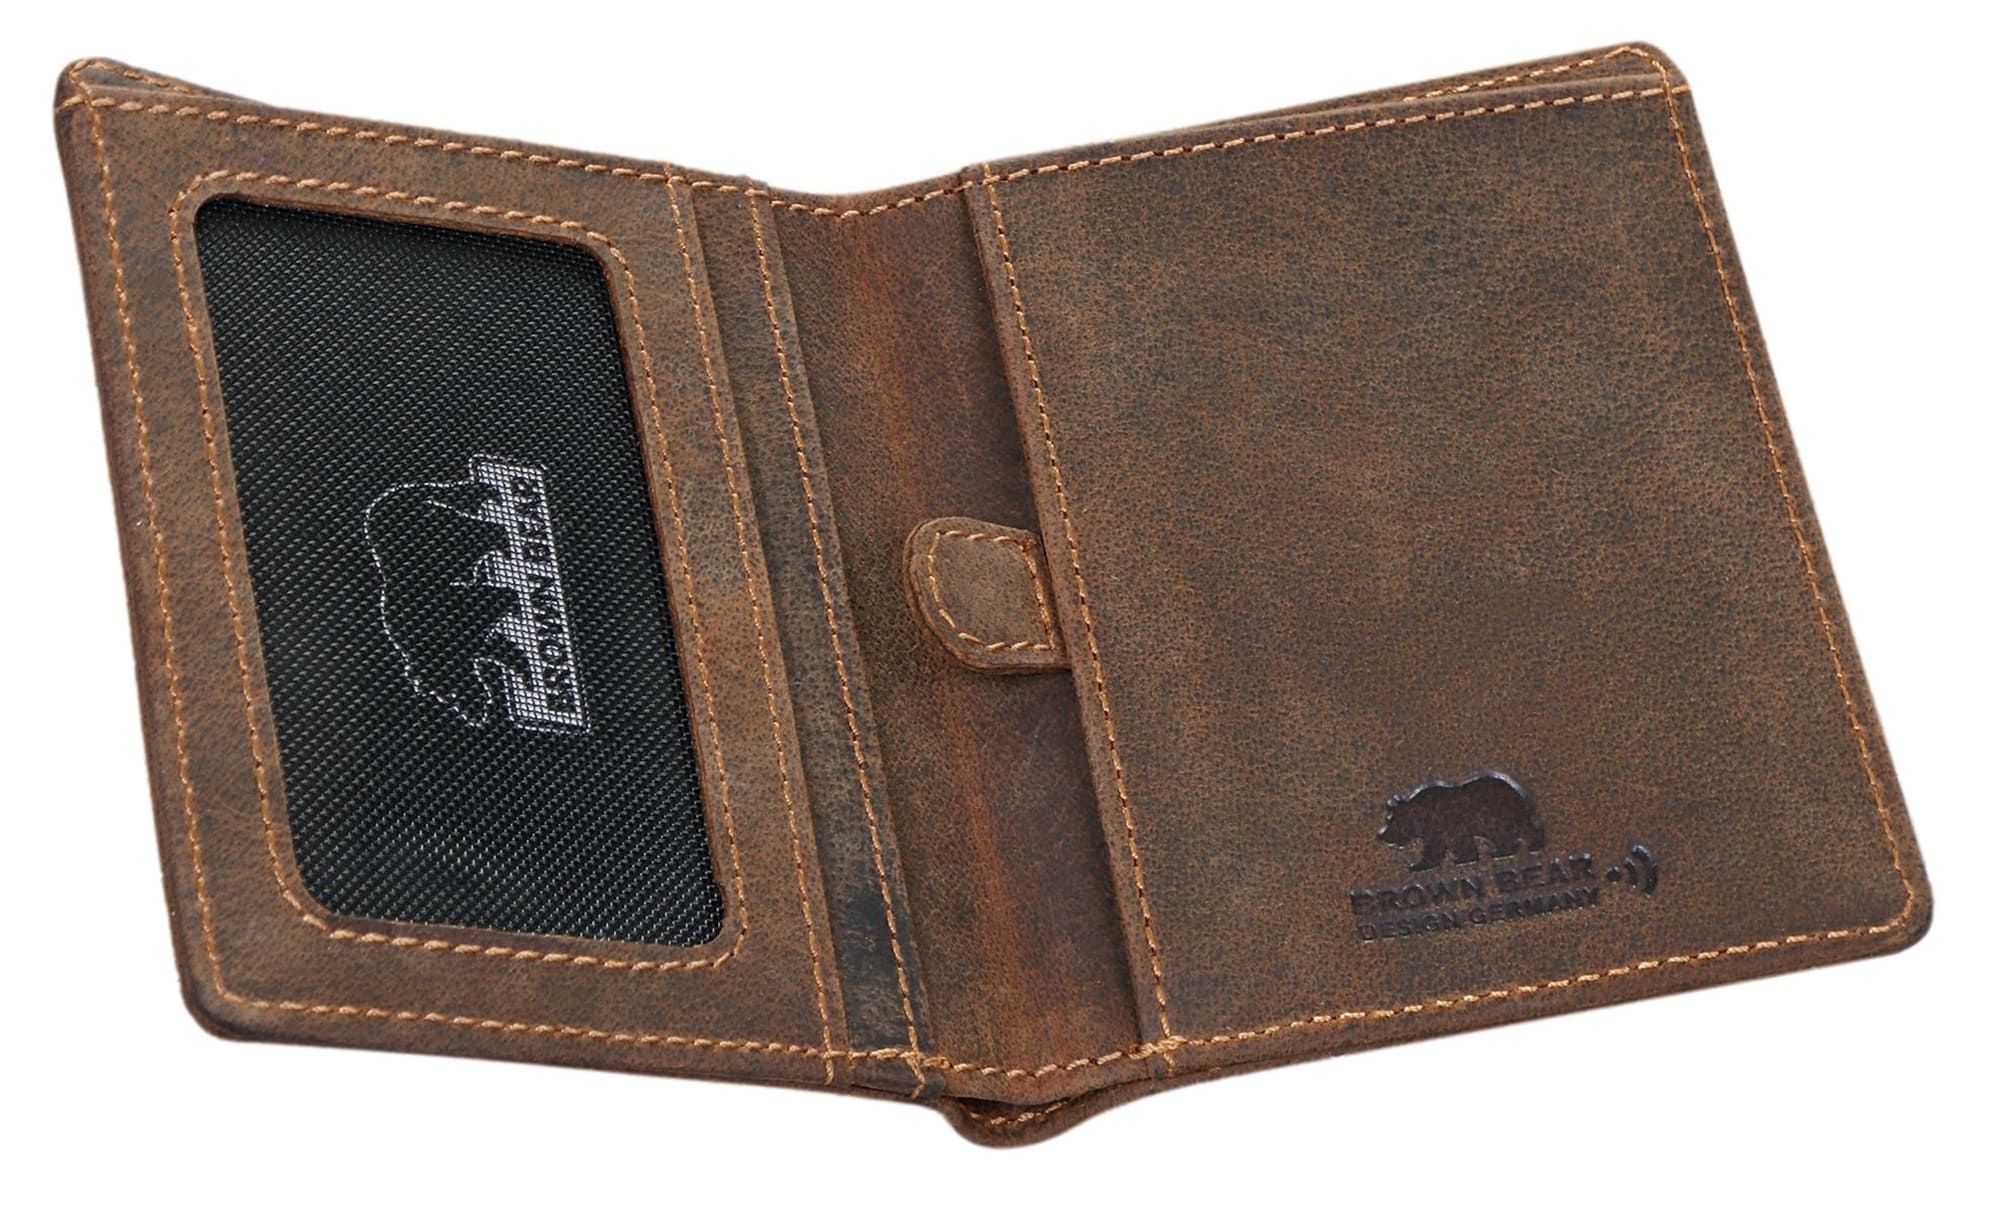 Brown Bear Slim Wallet - 8005 Braun Vintage